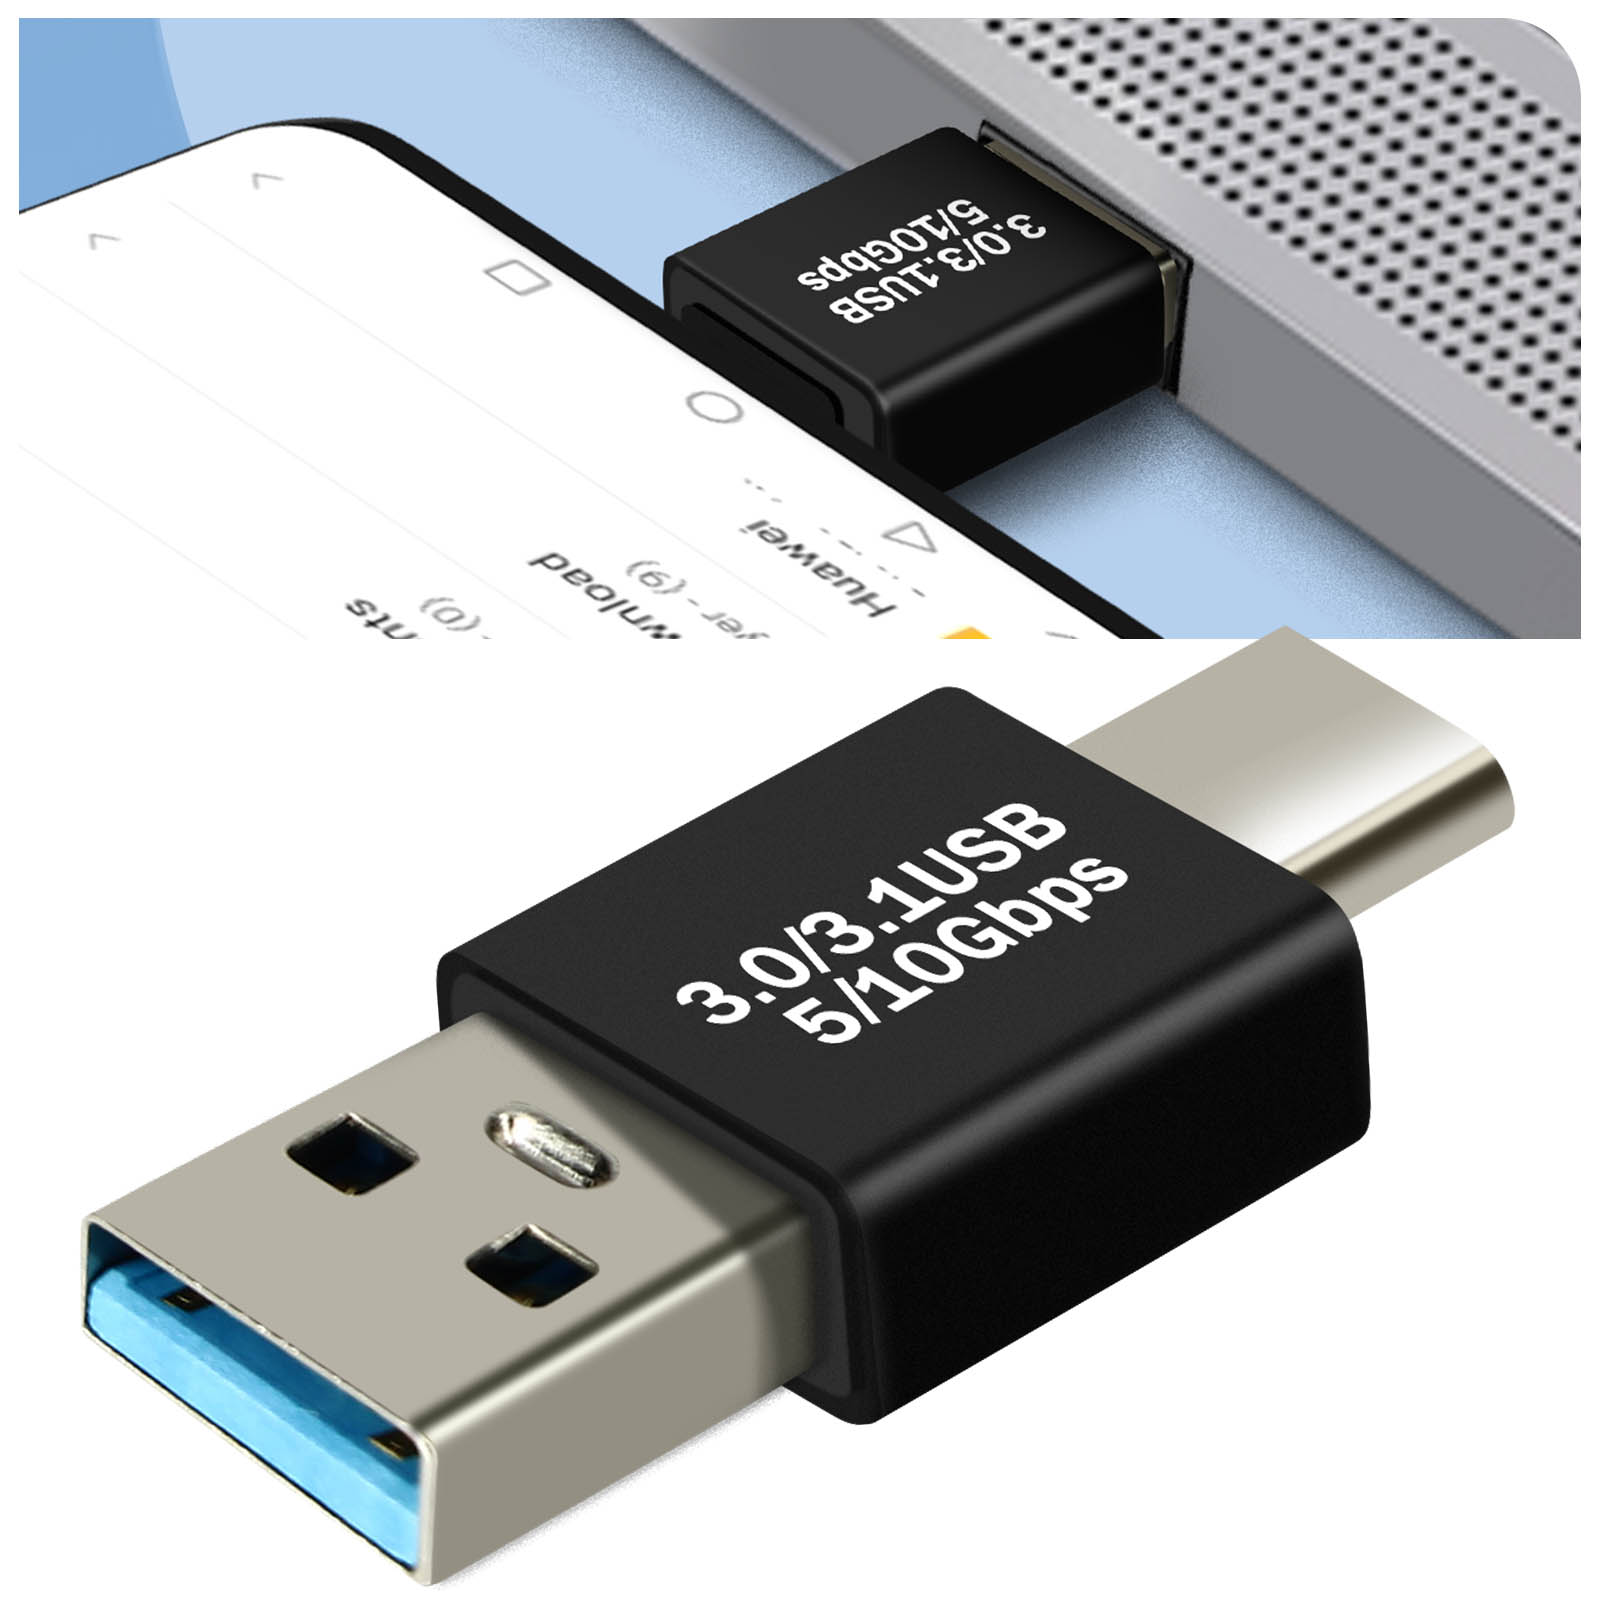 Adaptateur USB C USB, Pack de 4 Adaptateurs OTG mâle femelle